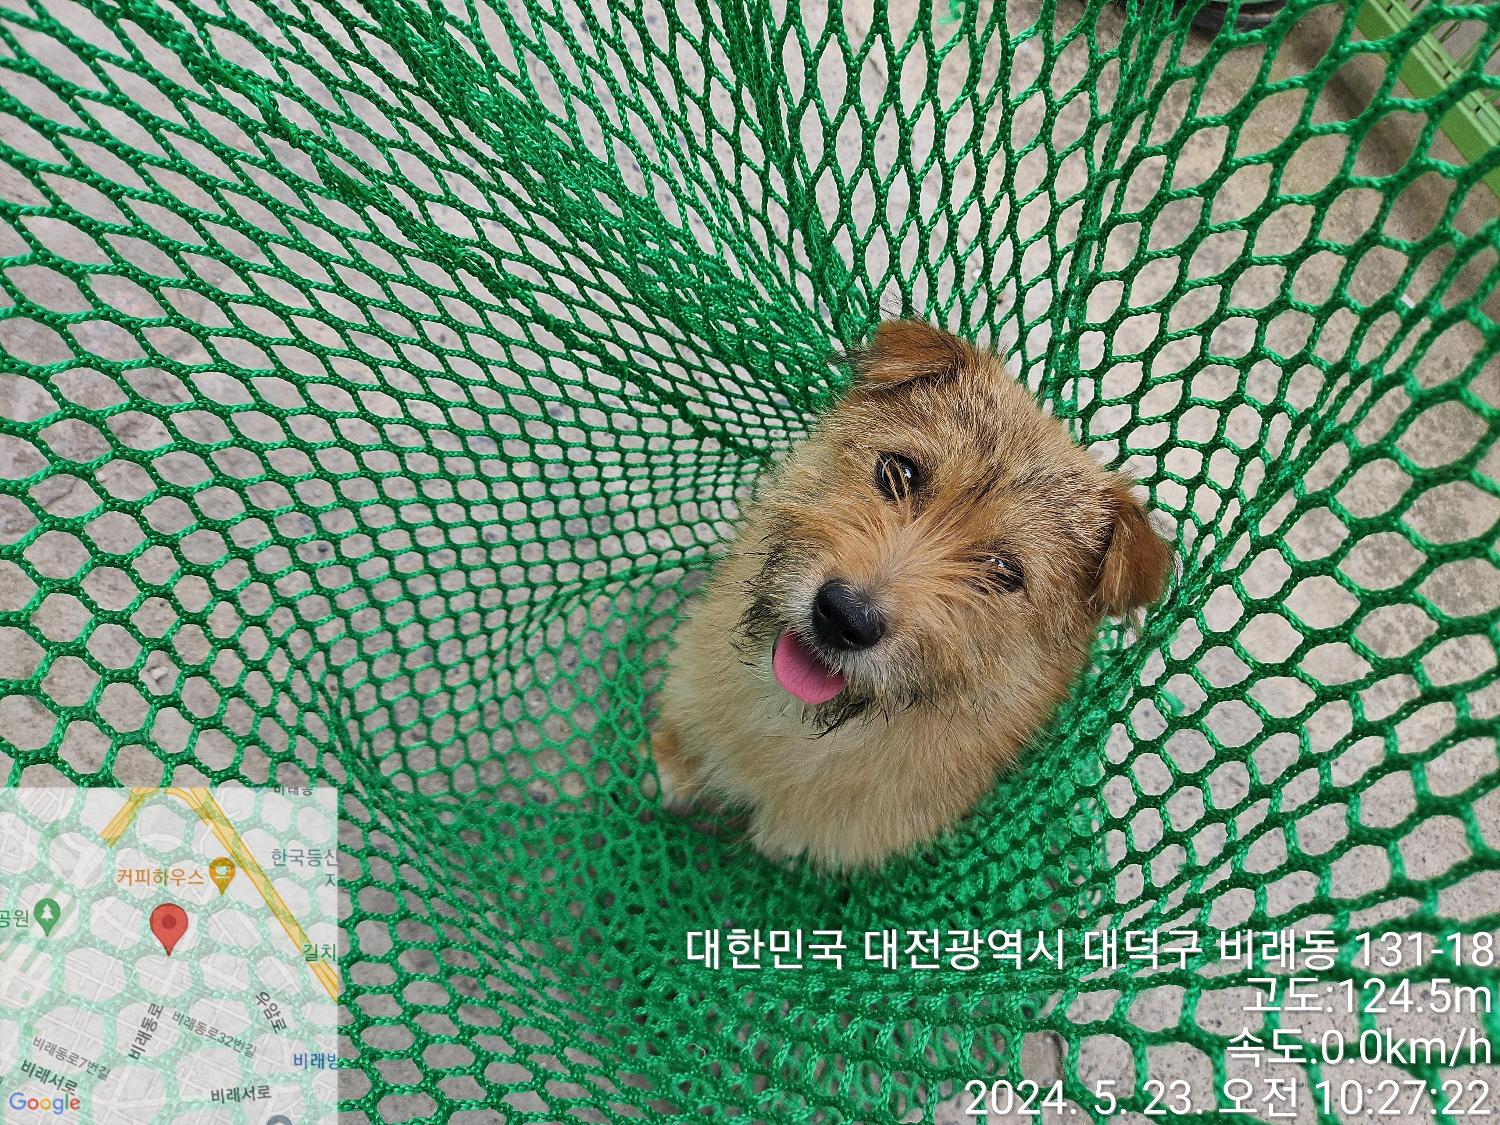 공고 번호가 대전-대덕-2024-00095인 믹스견 동물 사진